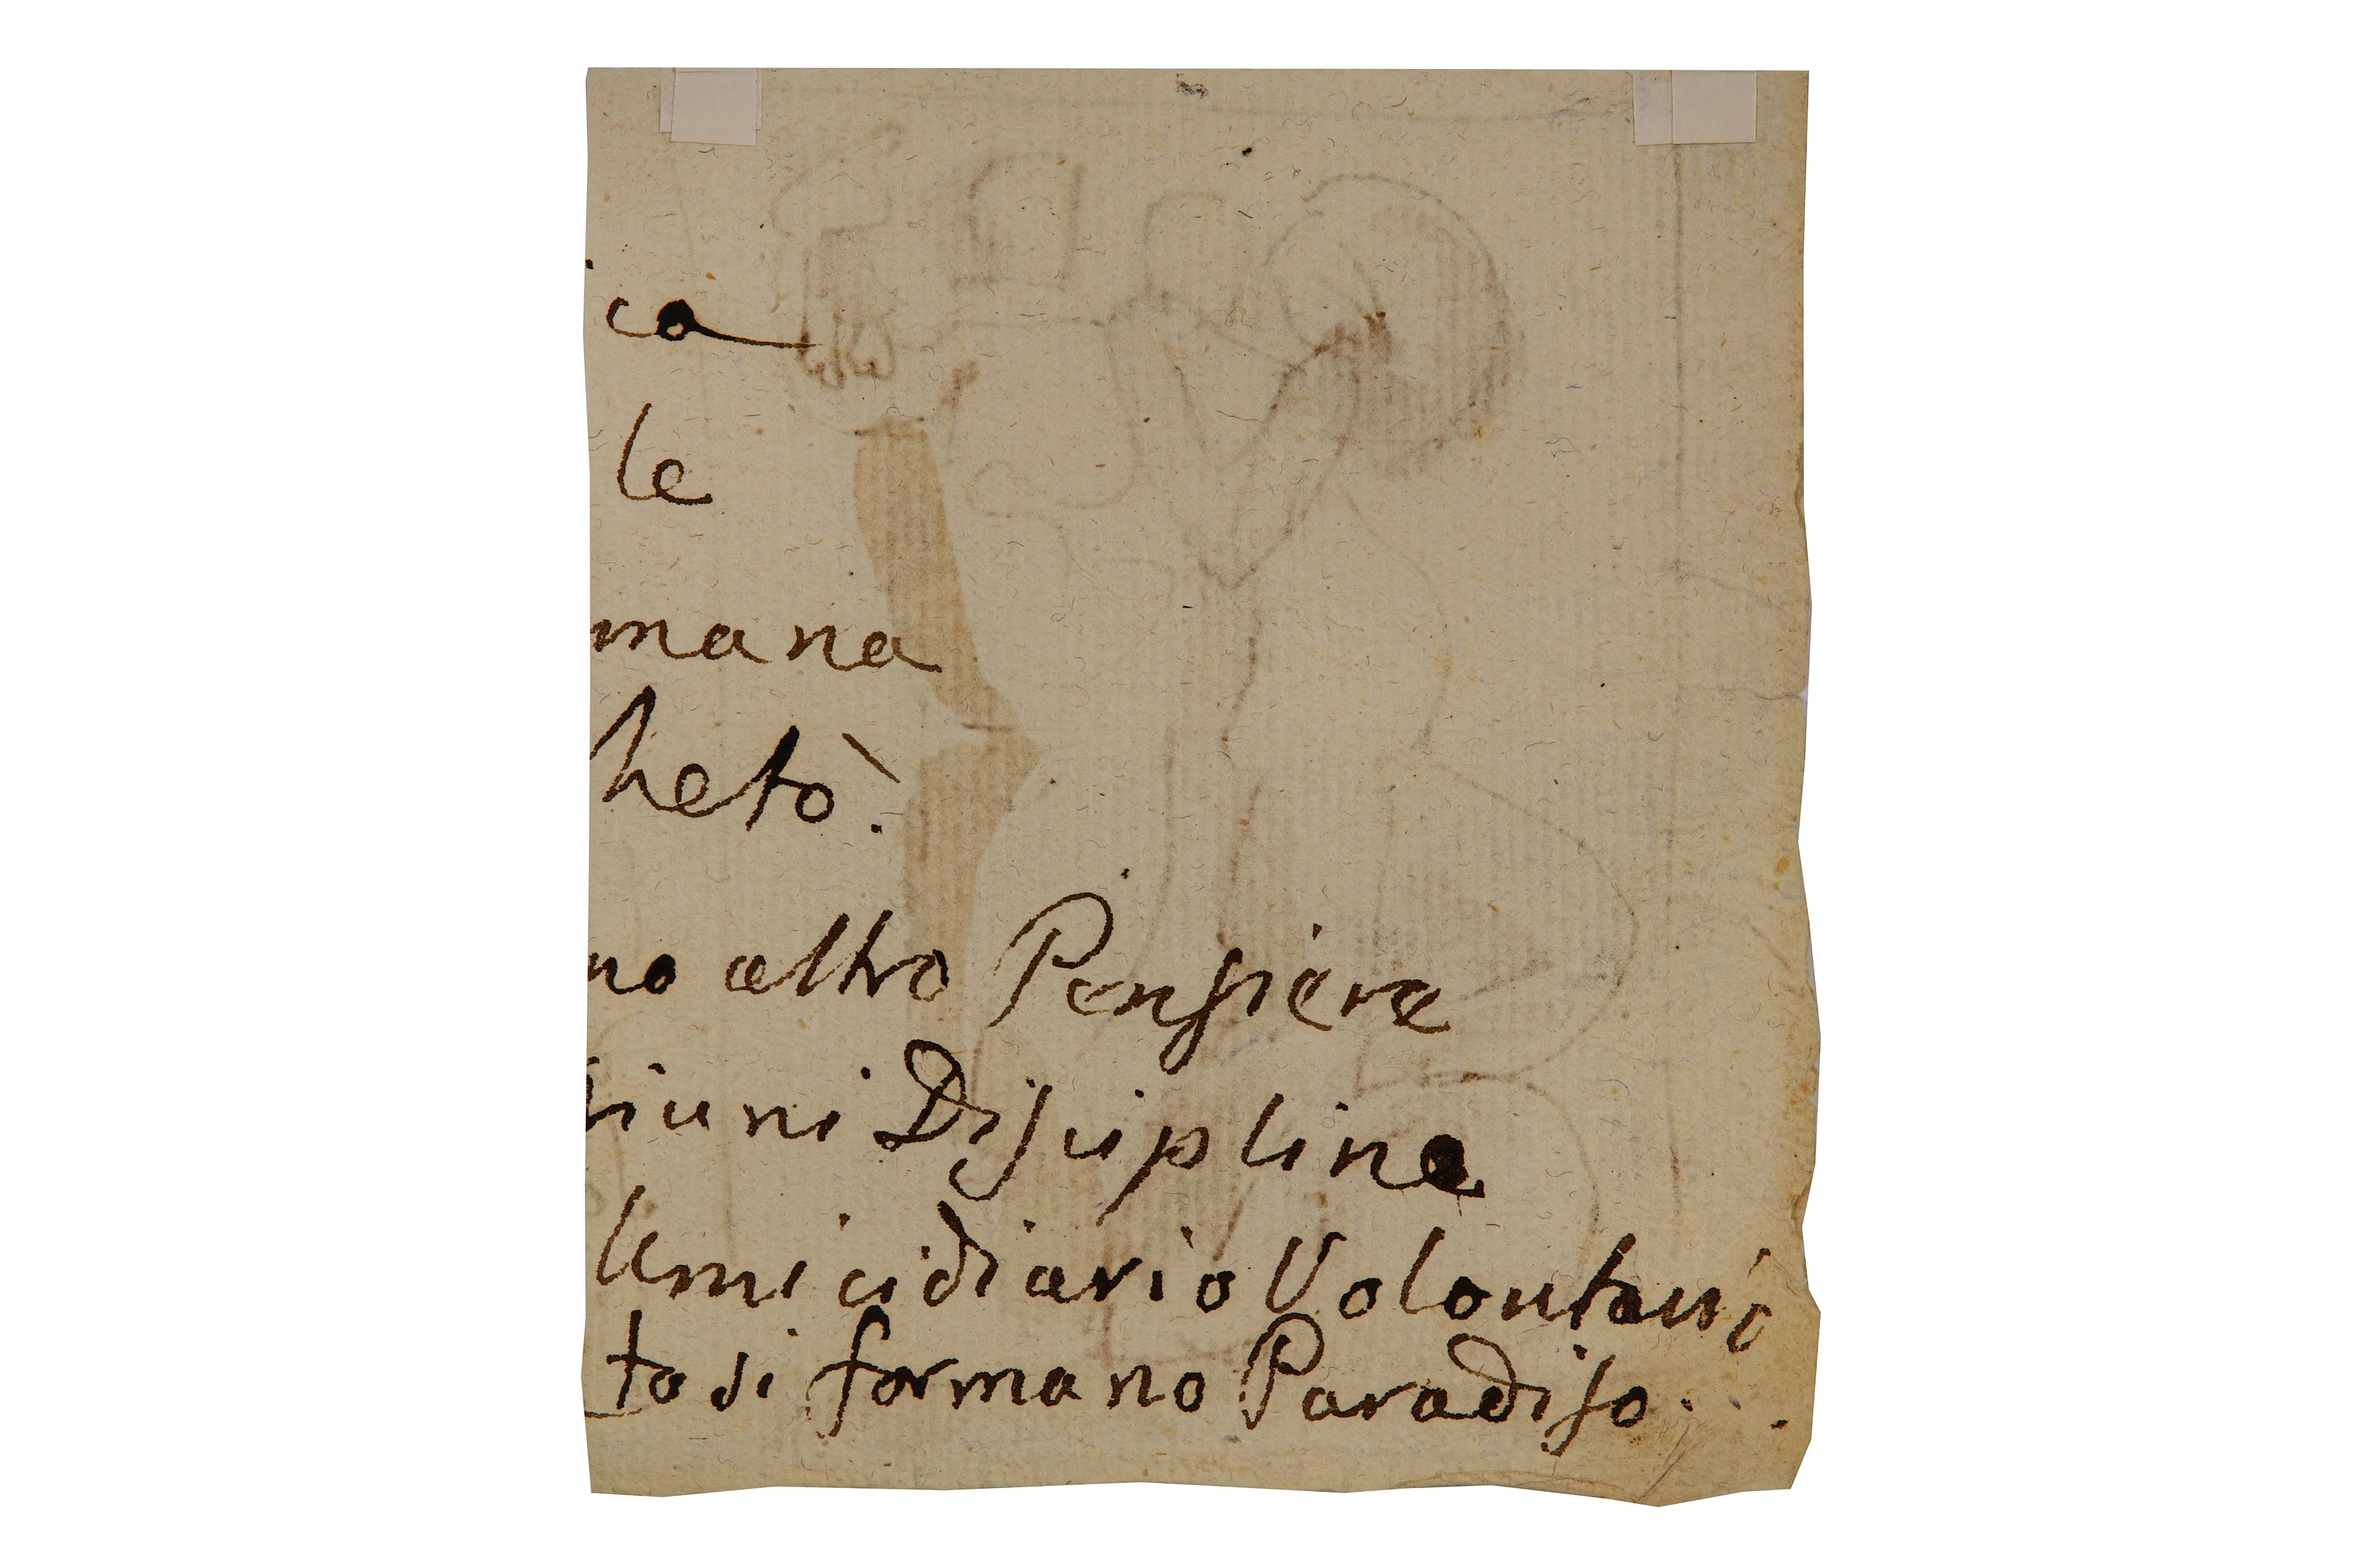 FORTUNATO DURANTI (MONTEFORTINO 1787 - 1863) - Image 2 of 2